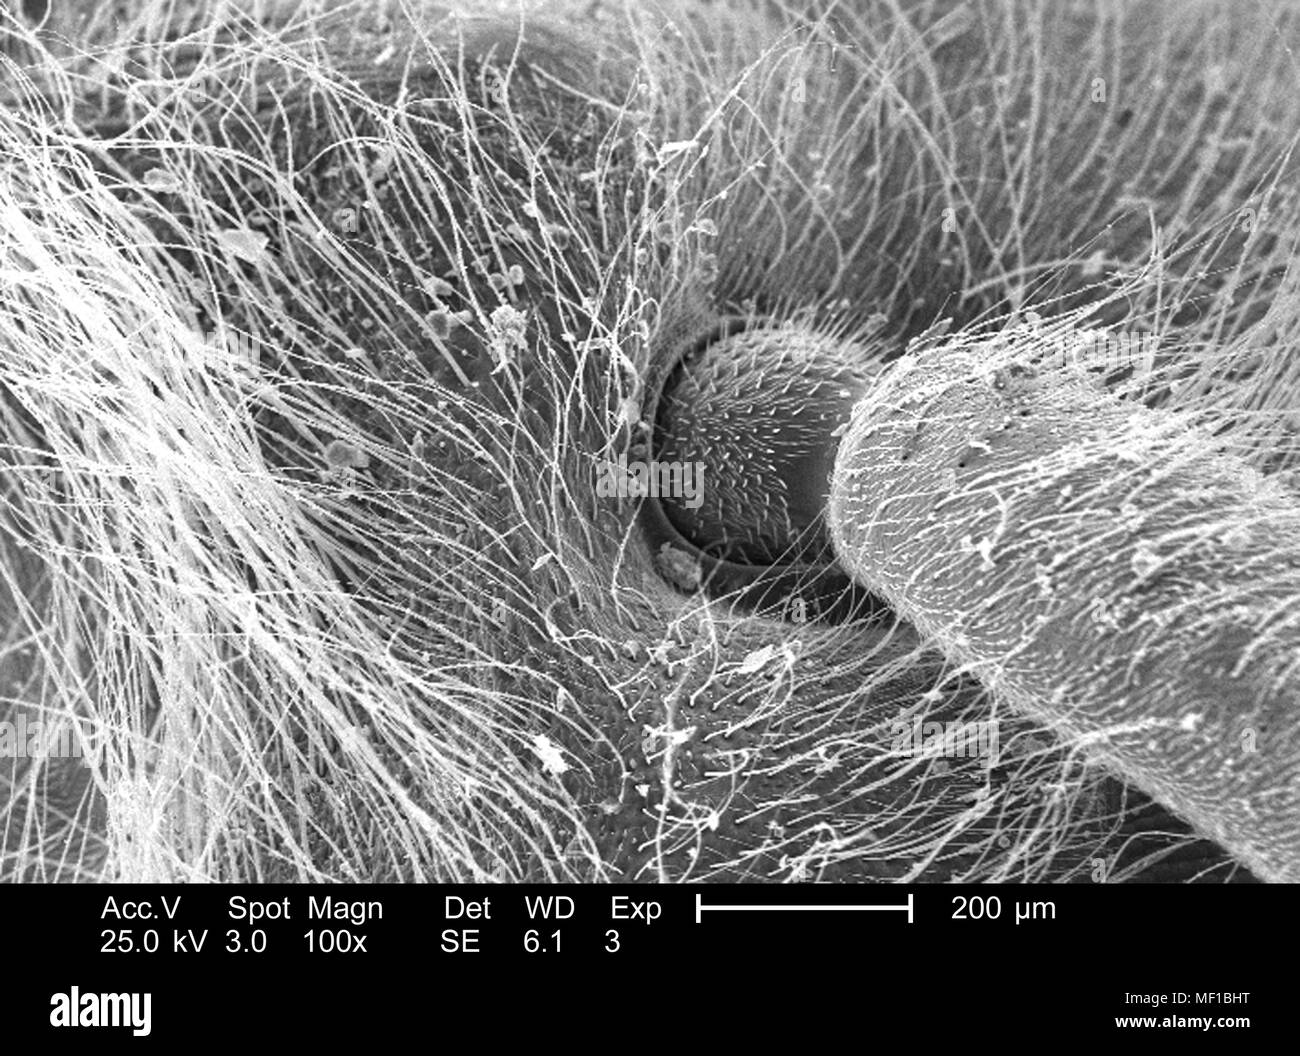 Dettagli morfologiche degli insetti non identificati, testa a snodo sferico di tipo sferico, raffigurato nella 100x di scansione ingrandita al microscopio elettronico (SEM) immagine, 2005. Immagine cortesia di centri per il controllo delle malattie (CDC) / Janice Haney Carr. () Foto Stock